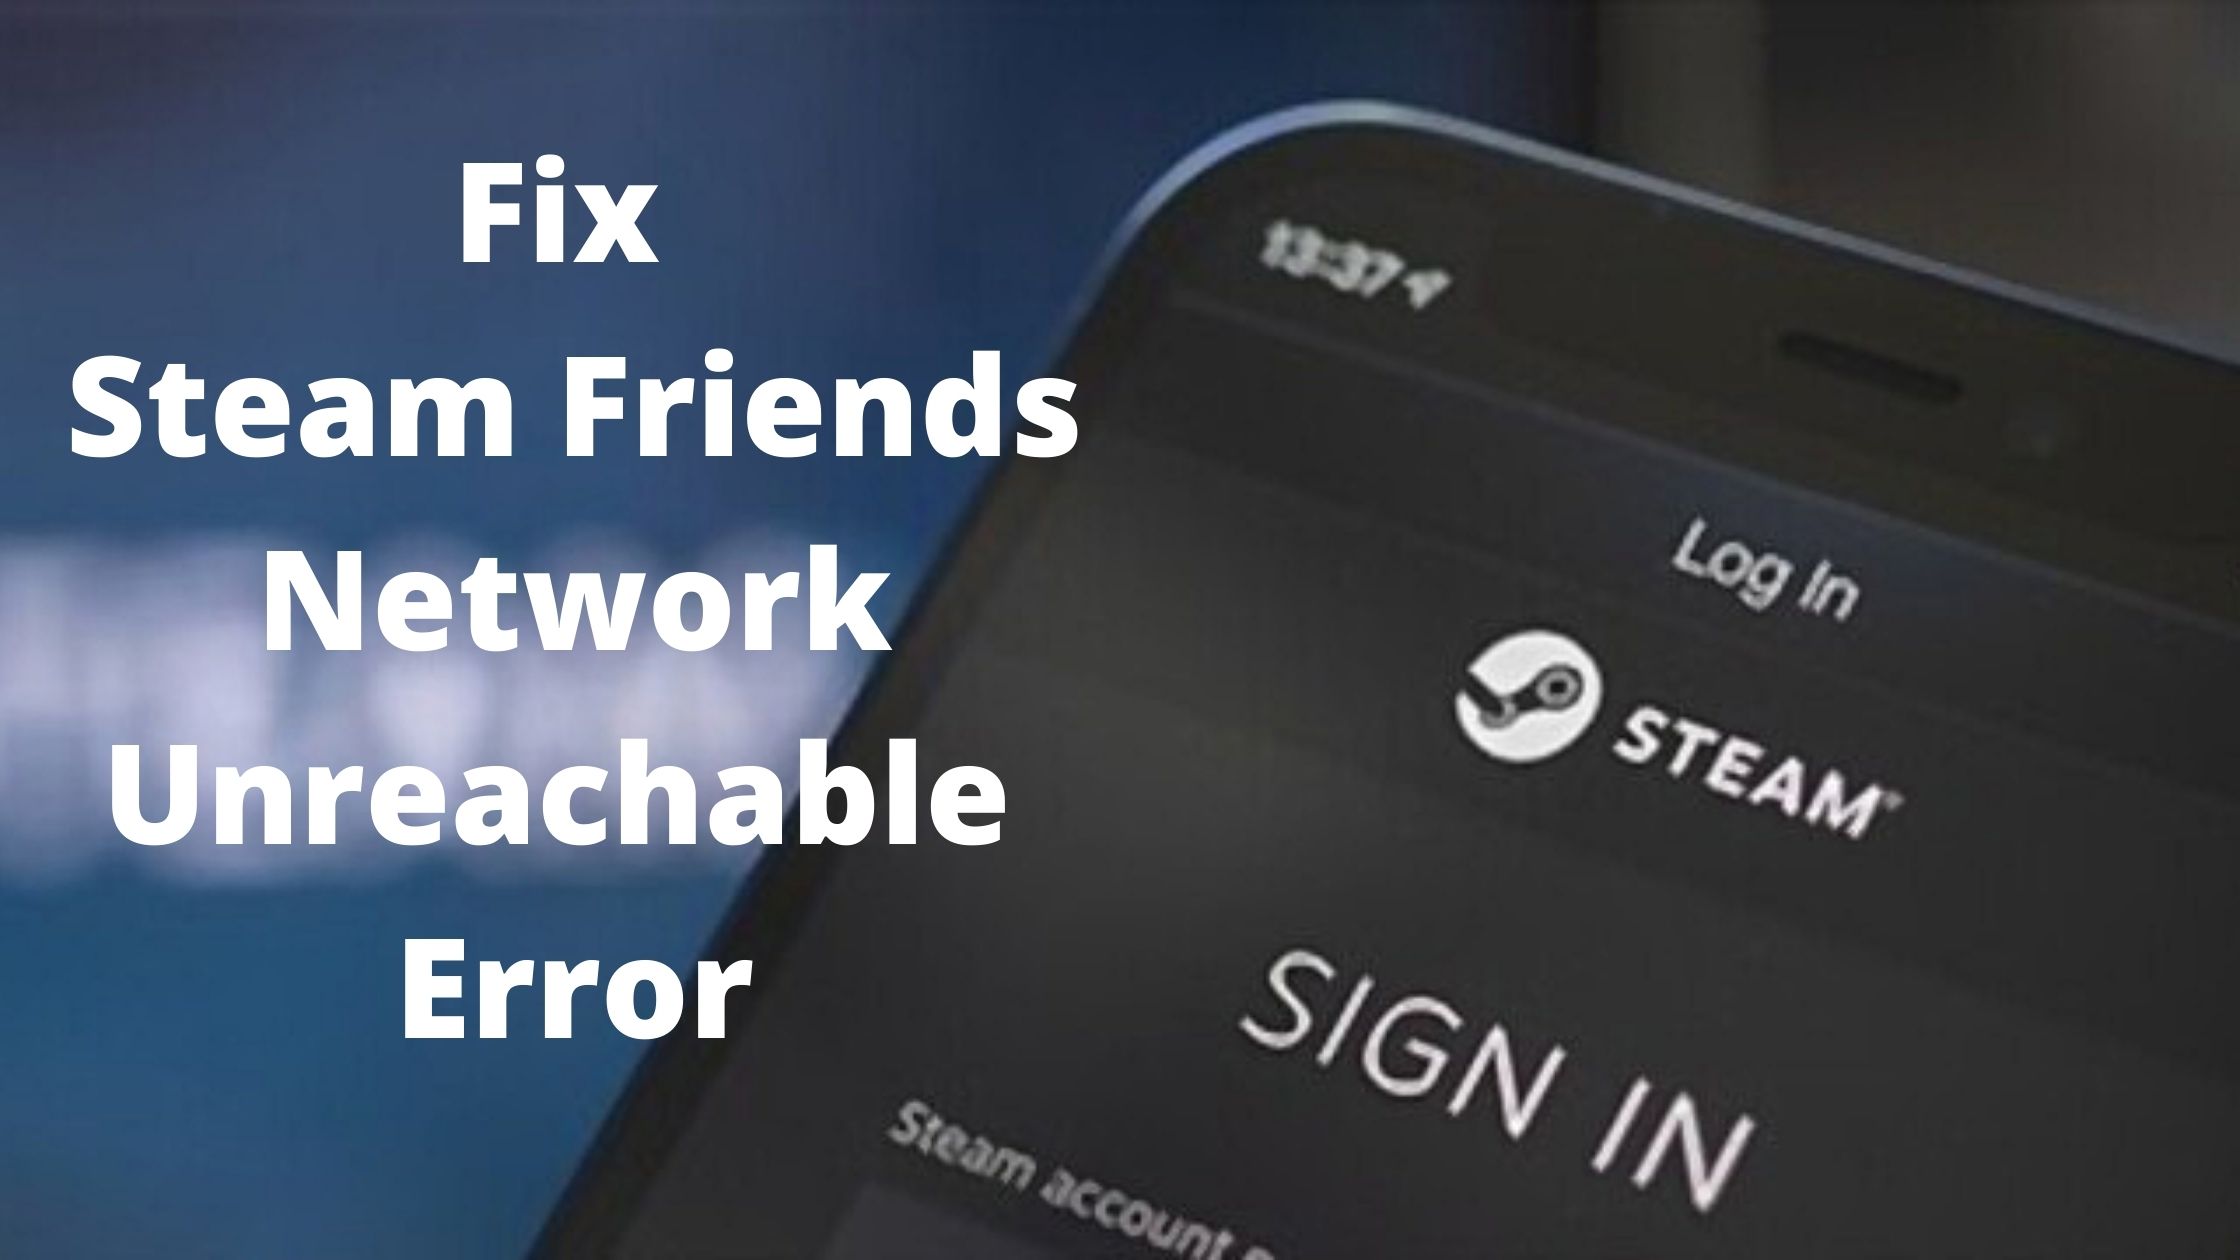 Fix Steam friends network unreachable